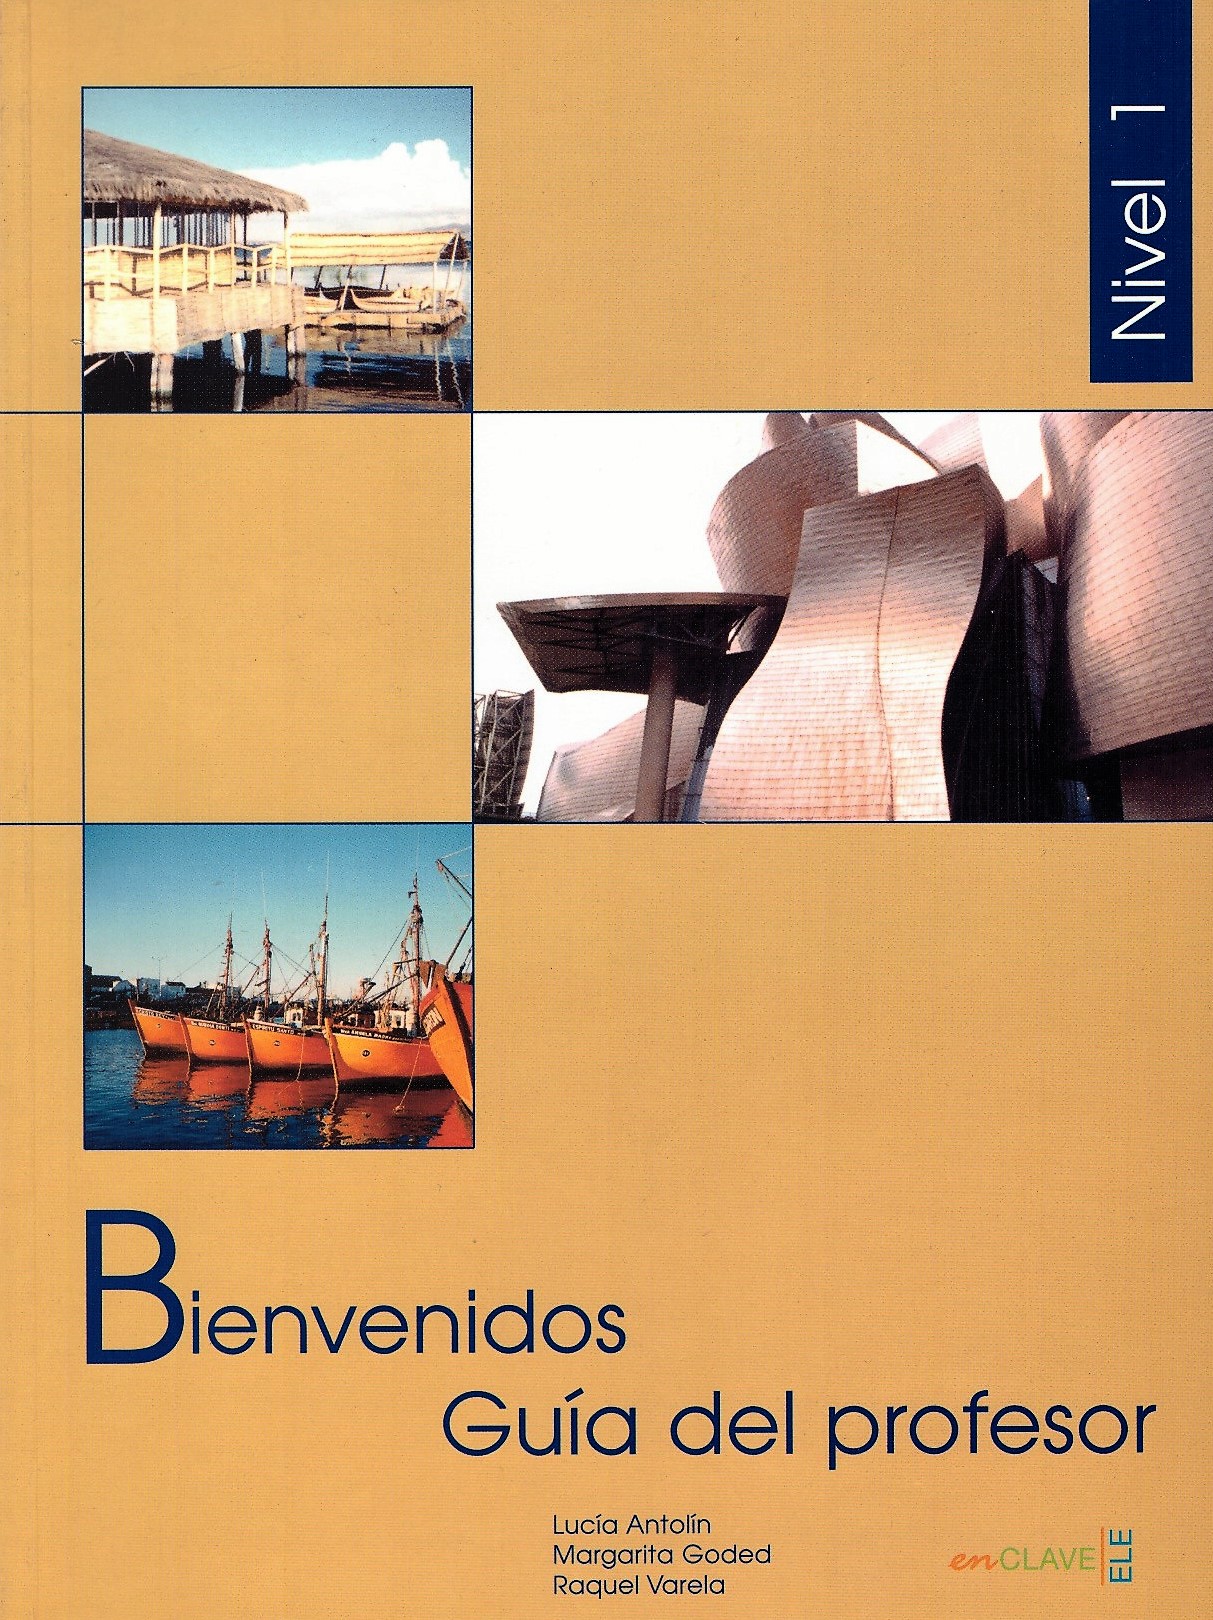 Bienvenidos 1 Guia del profesor / Книга для учителя